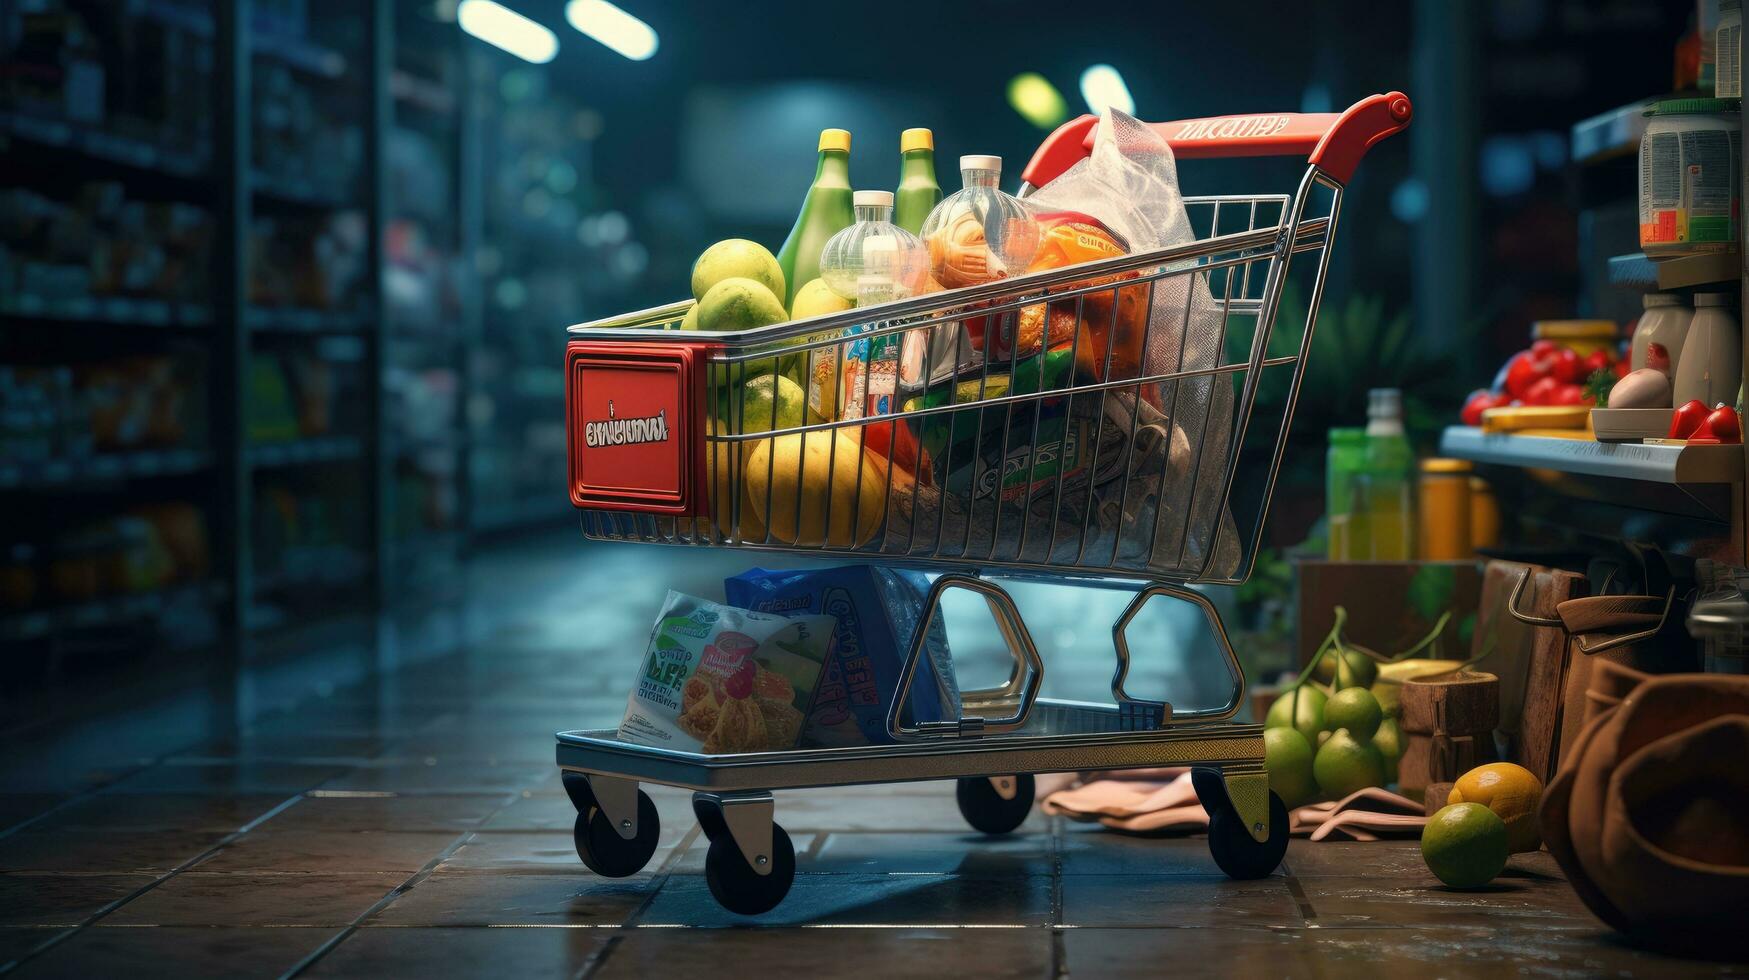 Einkaufen Wagen voll von Essen und Getränke und Supermarkt Regale hinter Lebensmittelgeschäft Einkaufen Konzept. foto